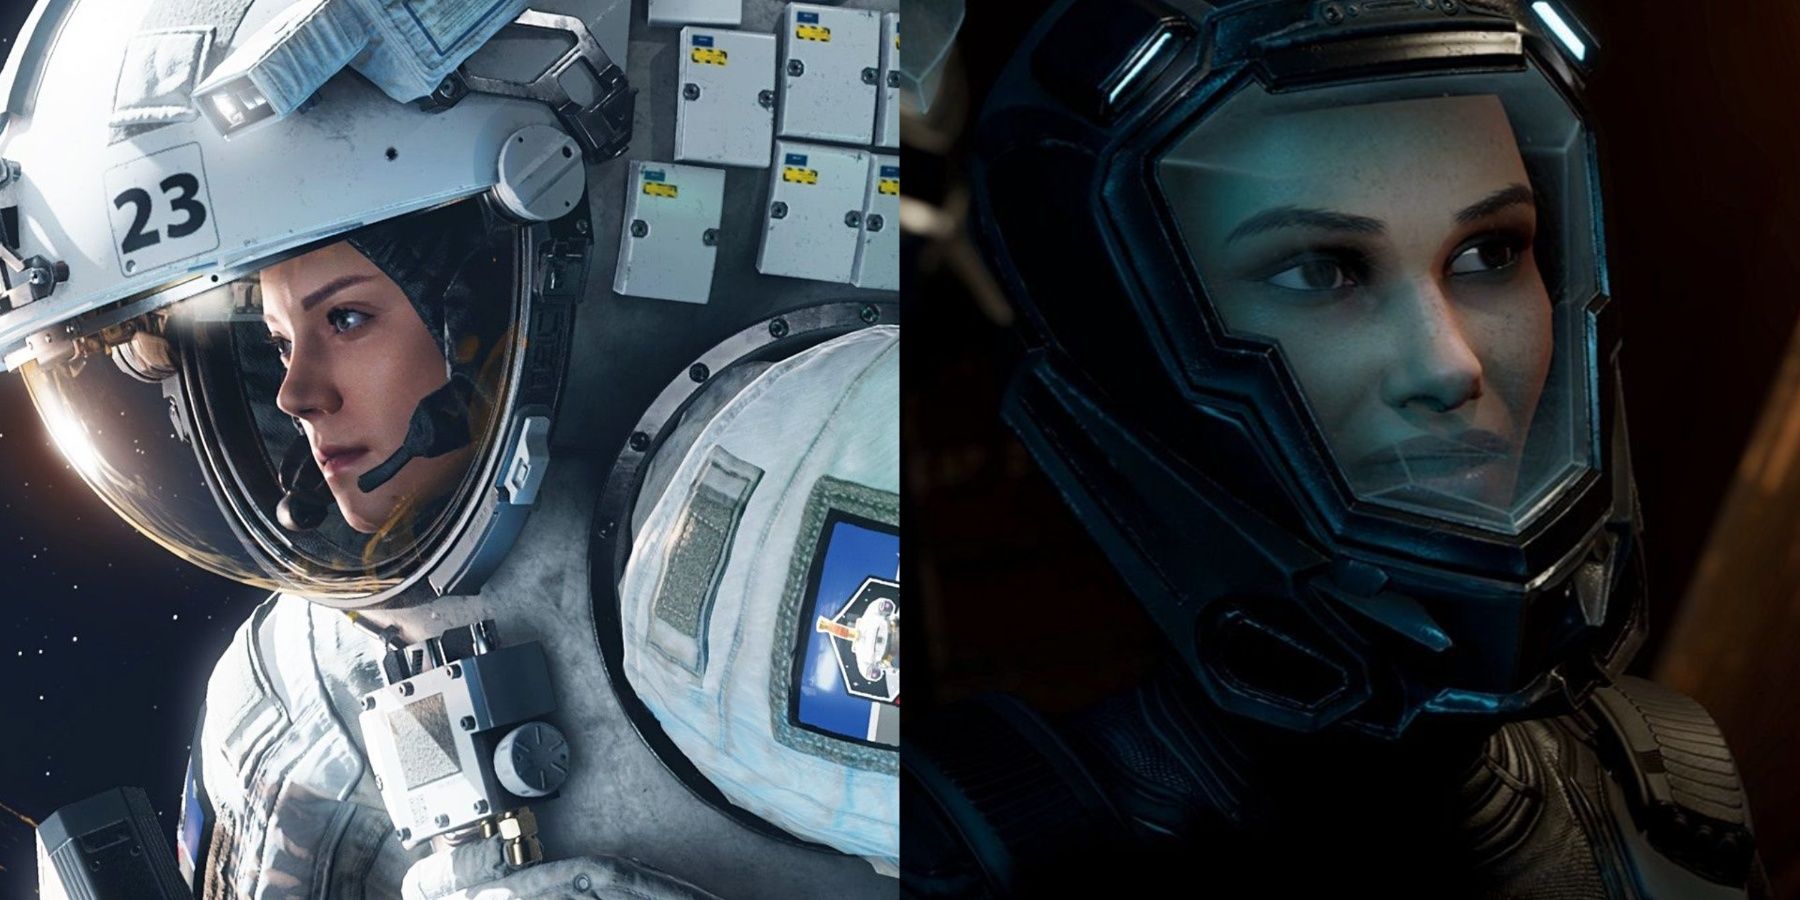 Sci-Fi Space Suit - Astronaut Men & Women in Characters - UE